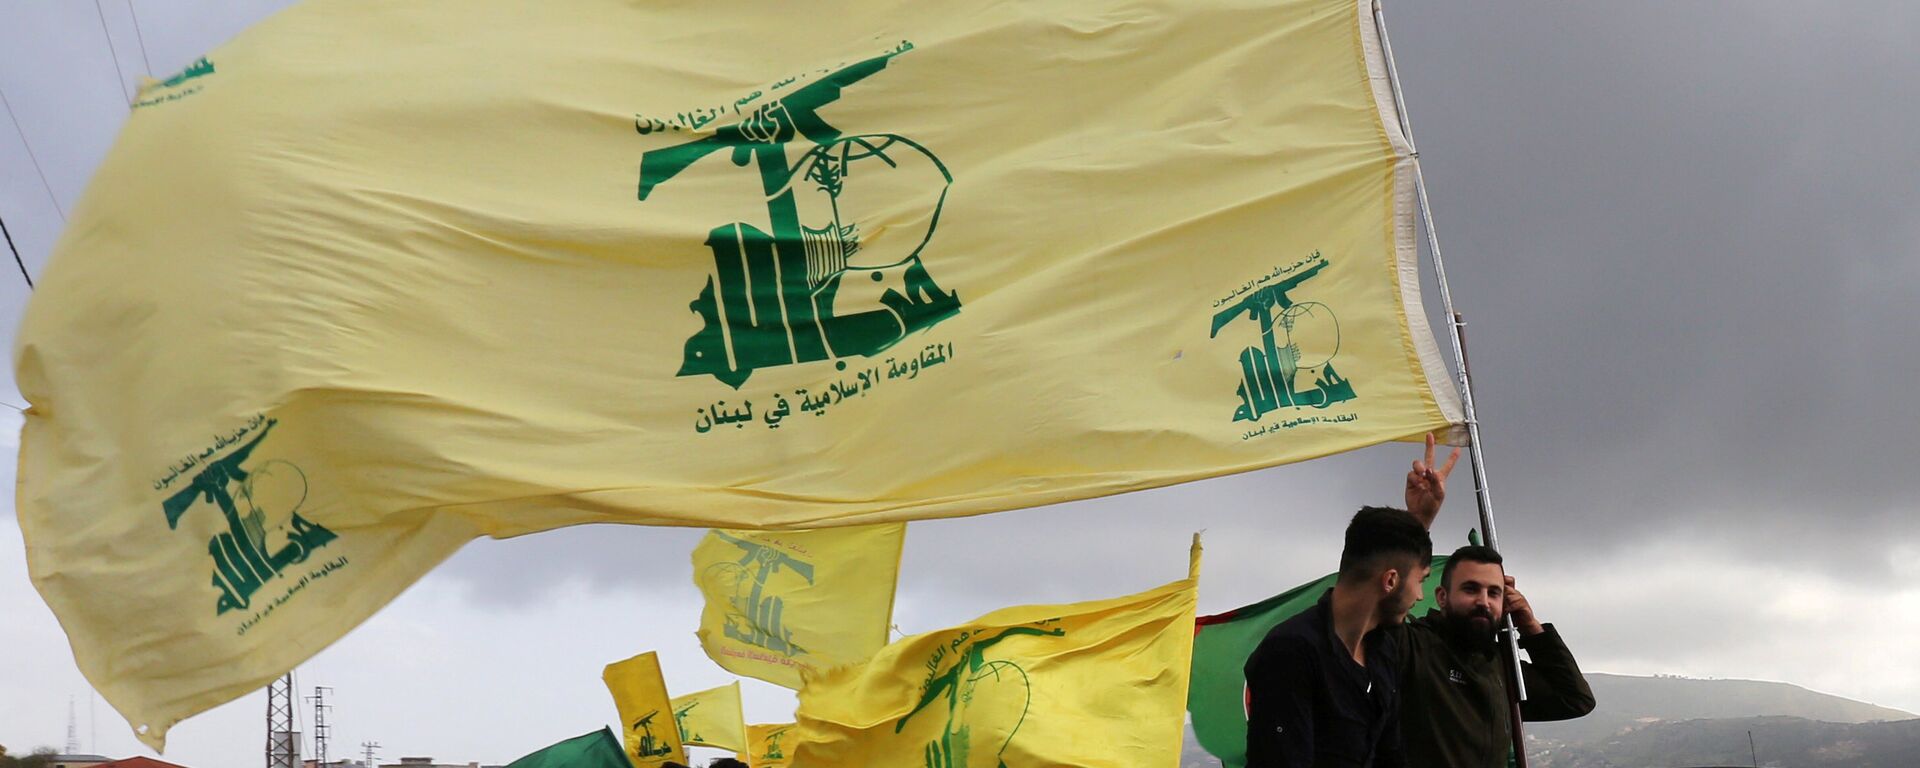 Des partisans du mouvement chiite libanais Hezbollah  - Sputnik Afrique, 1920, 01.03.2021